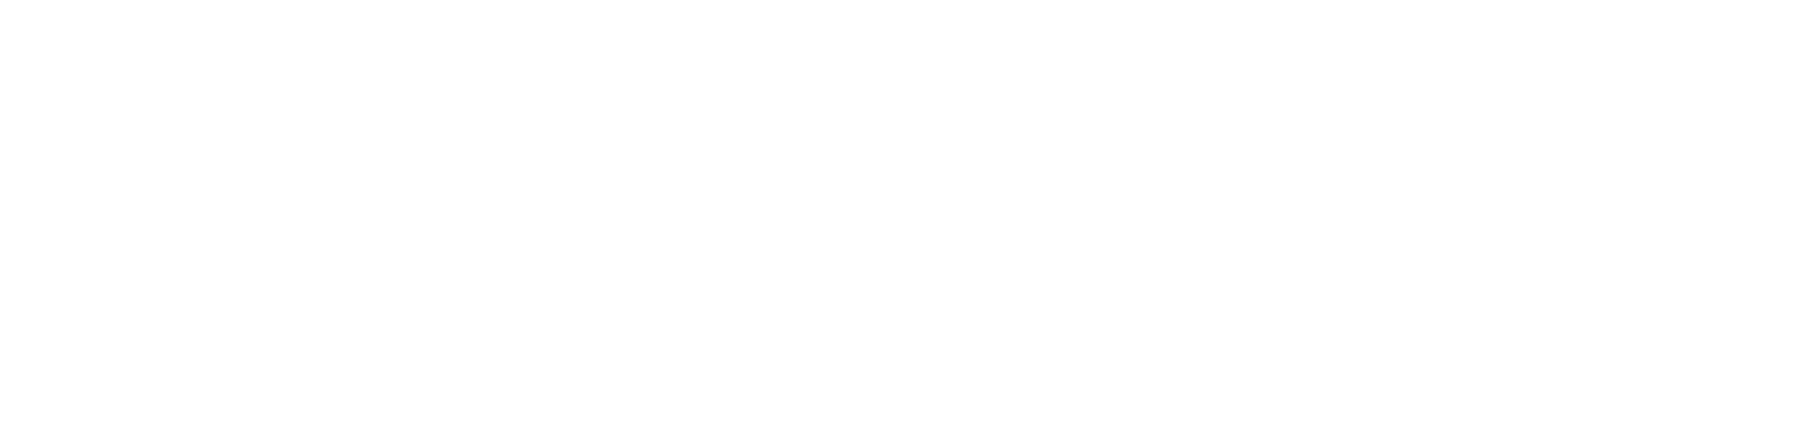 AMD logo large for dark backgrounds (transparent PNG)